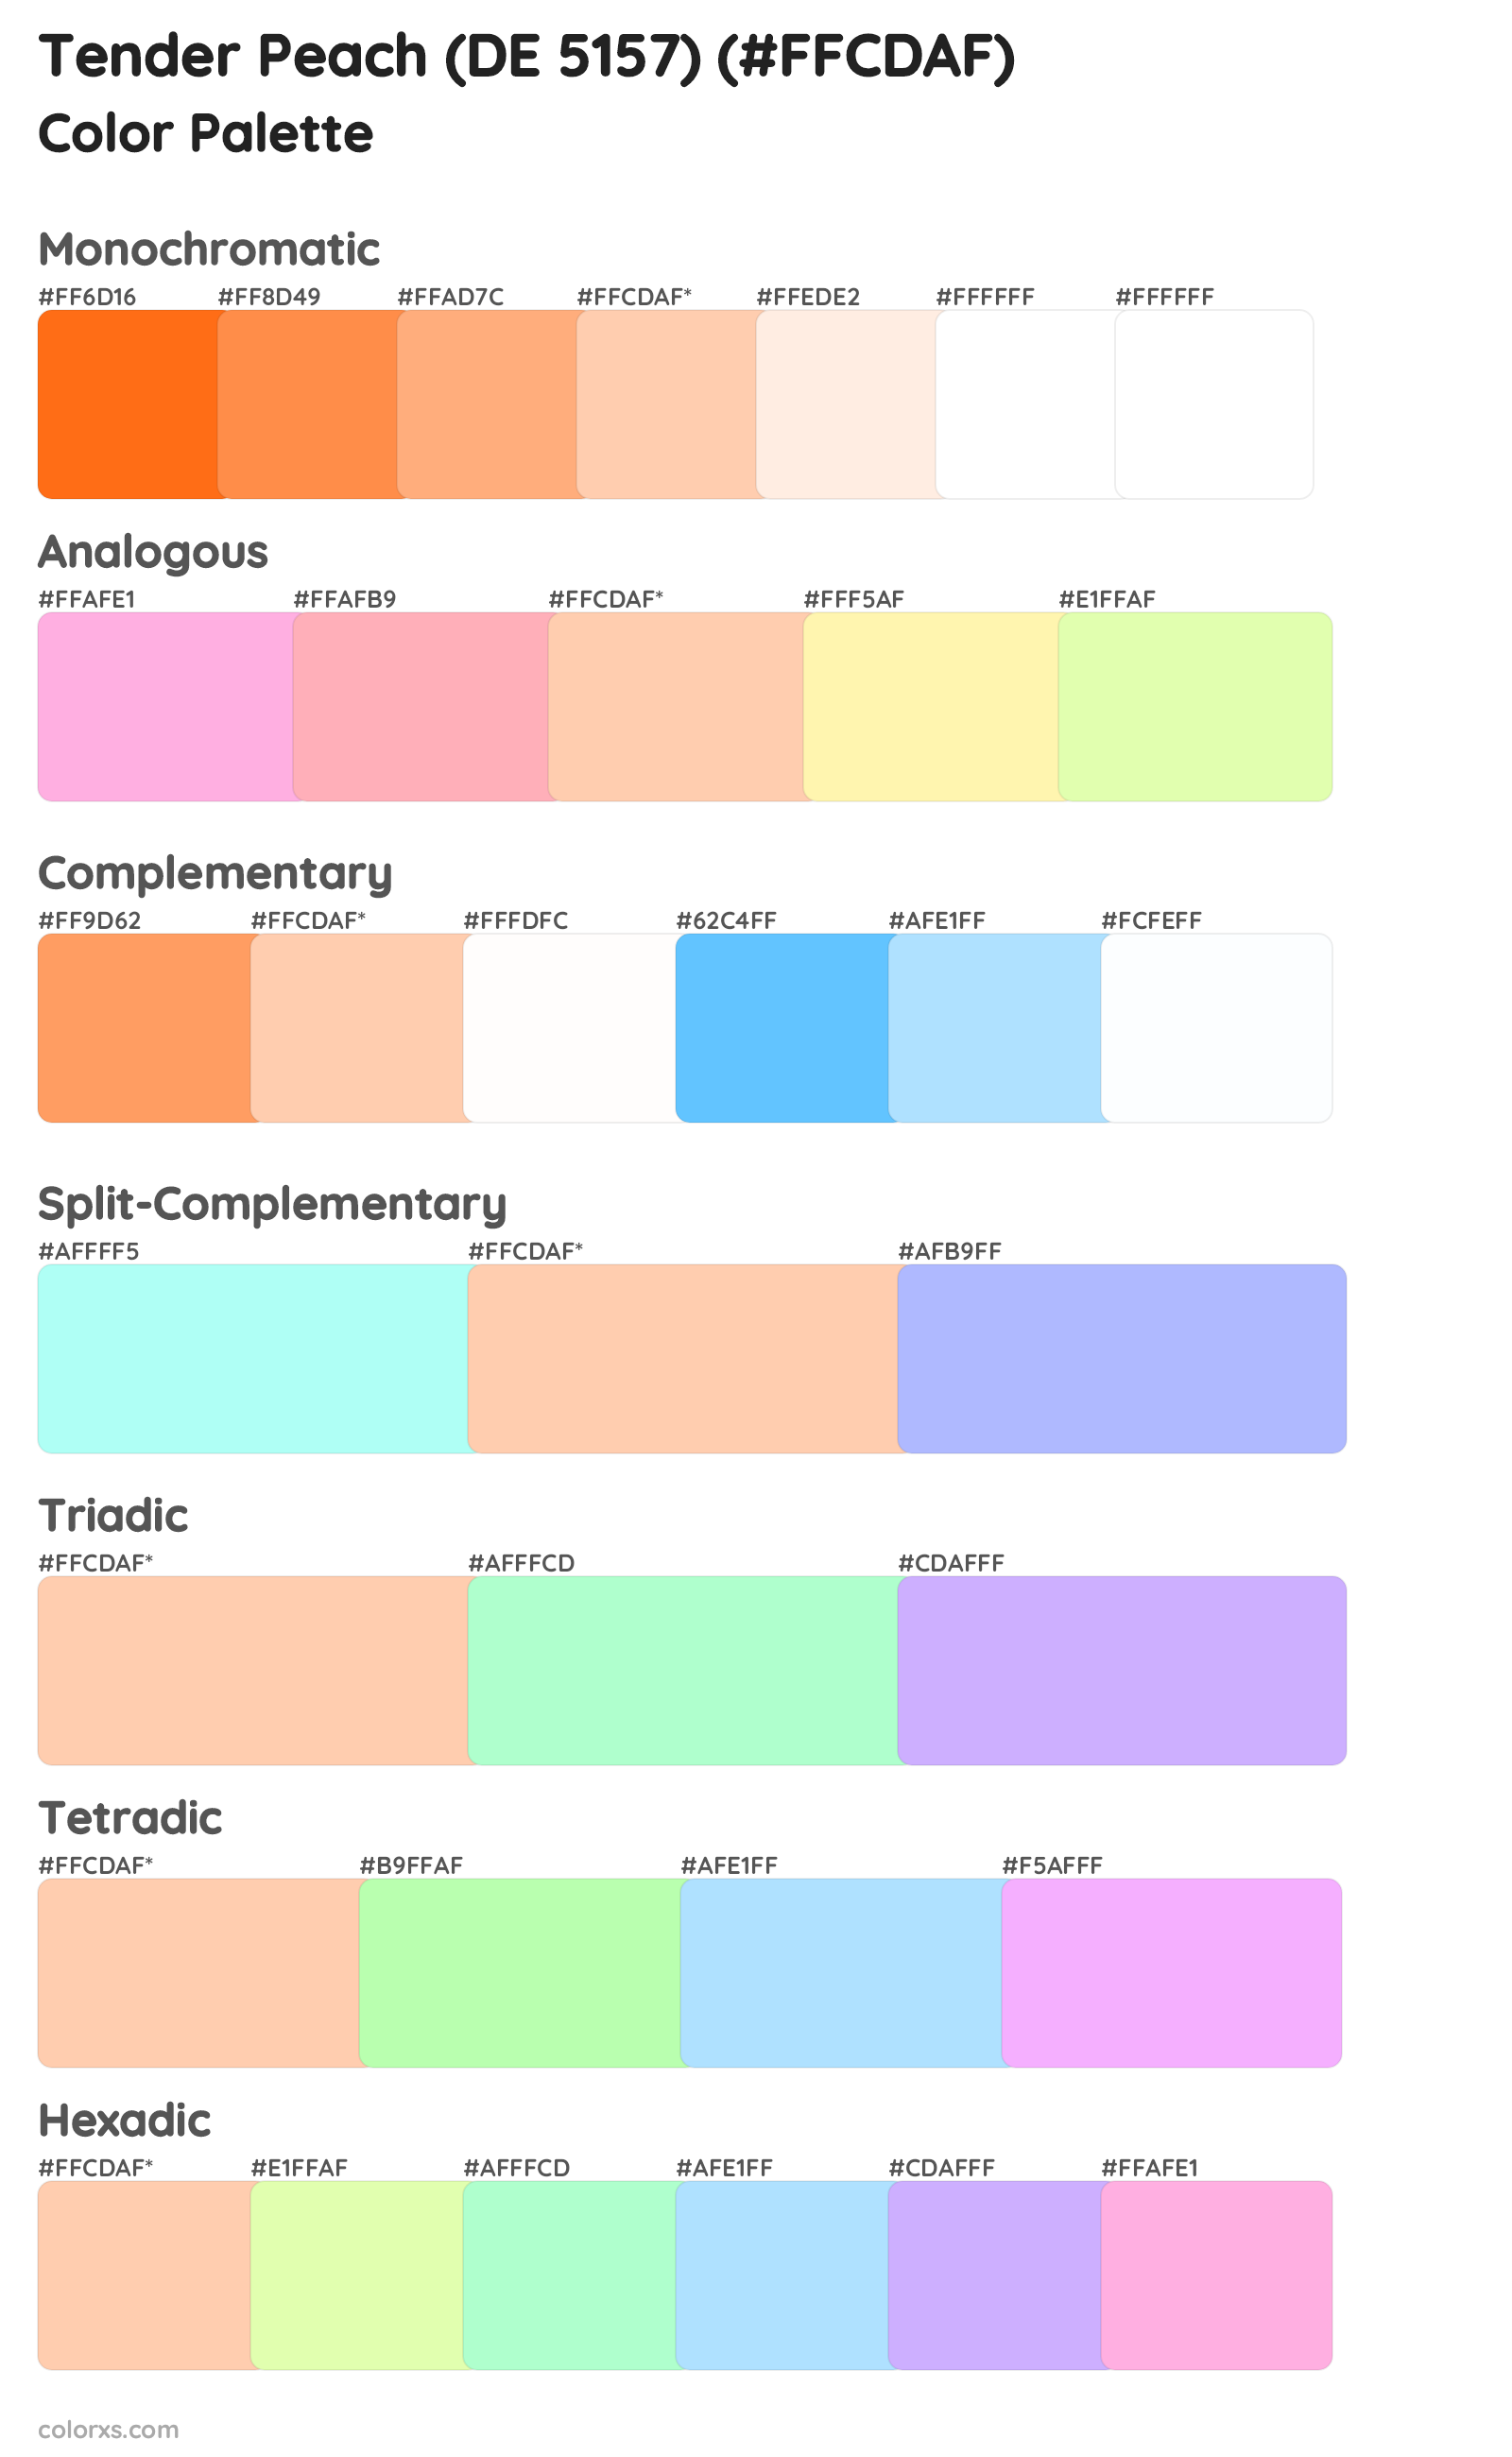 Tender Peach (DE 5157) Color Scheme Palettes